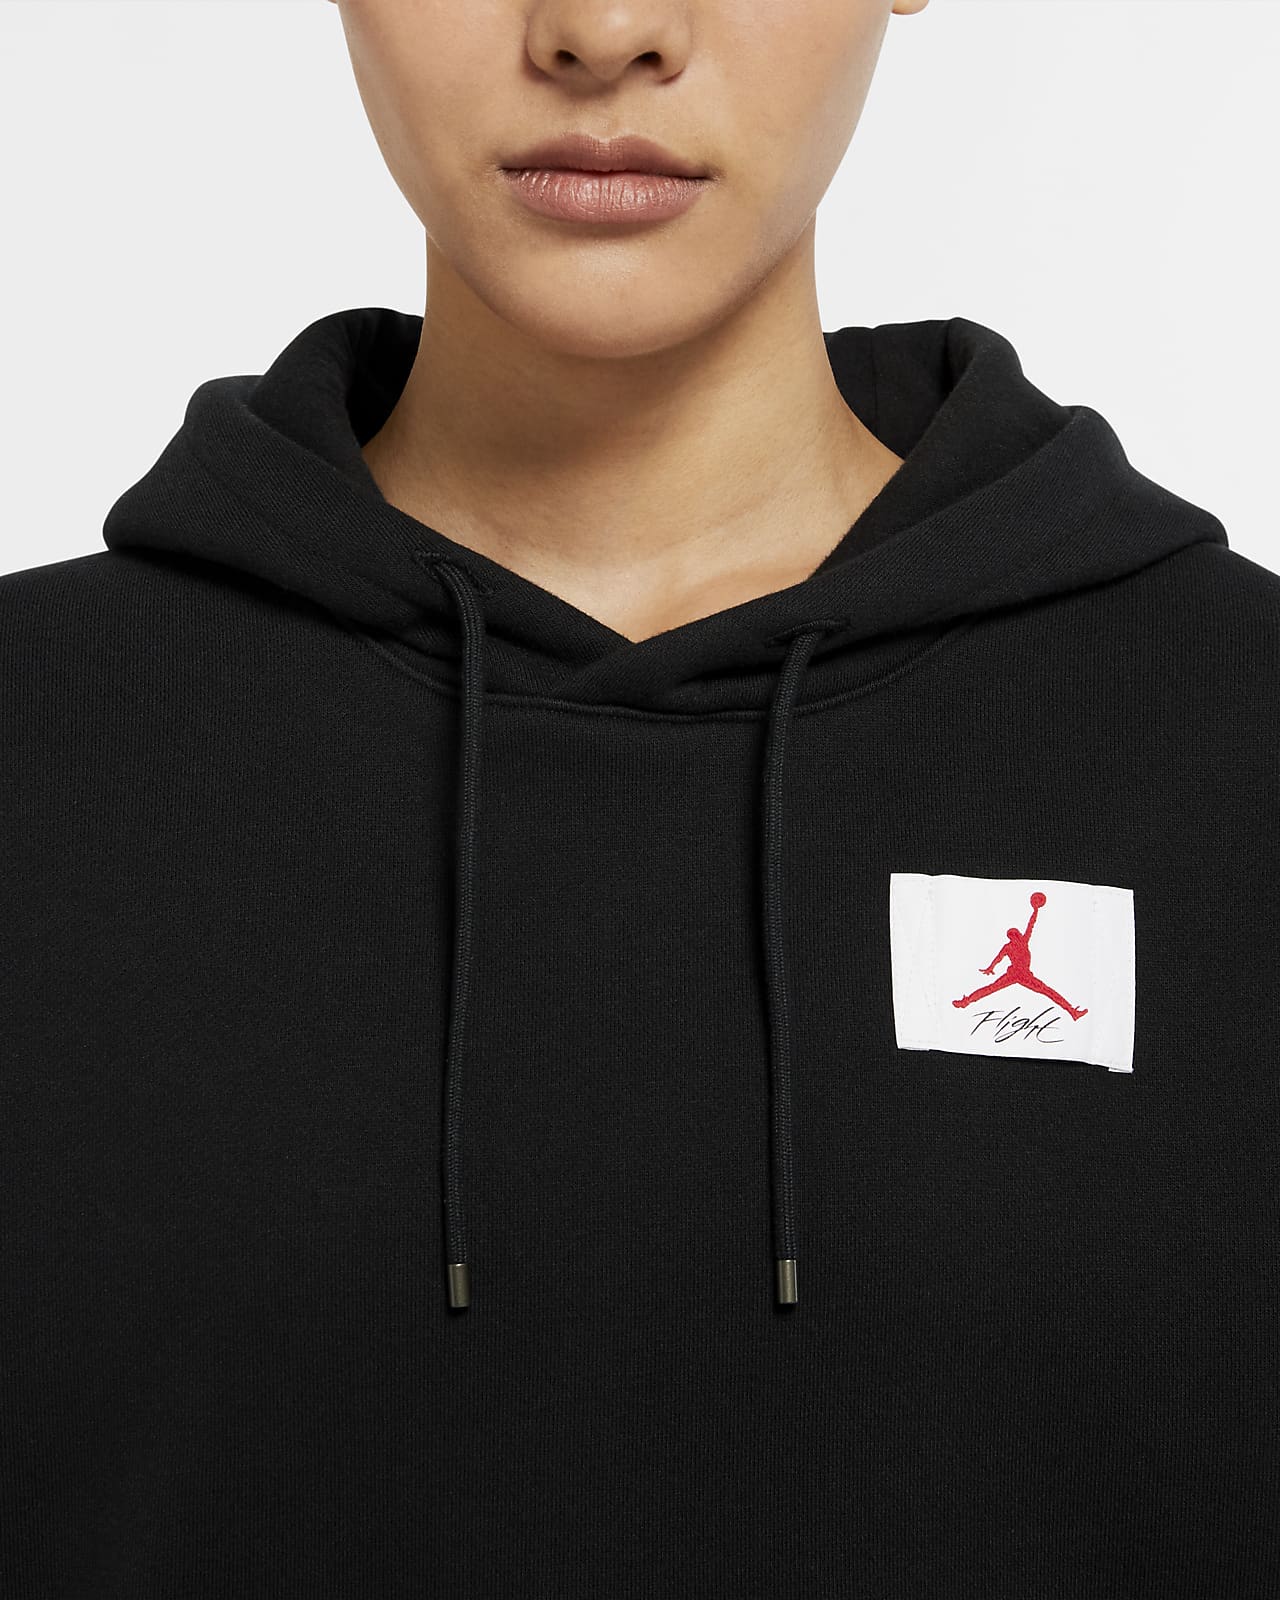 Fleece Pullover Hoodie. Nike AU